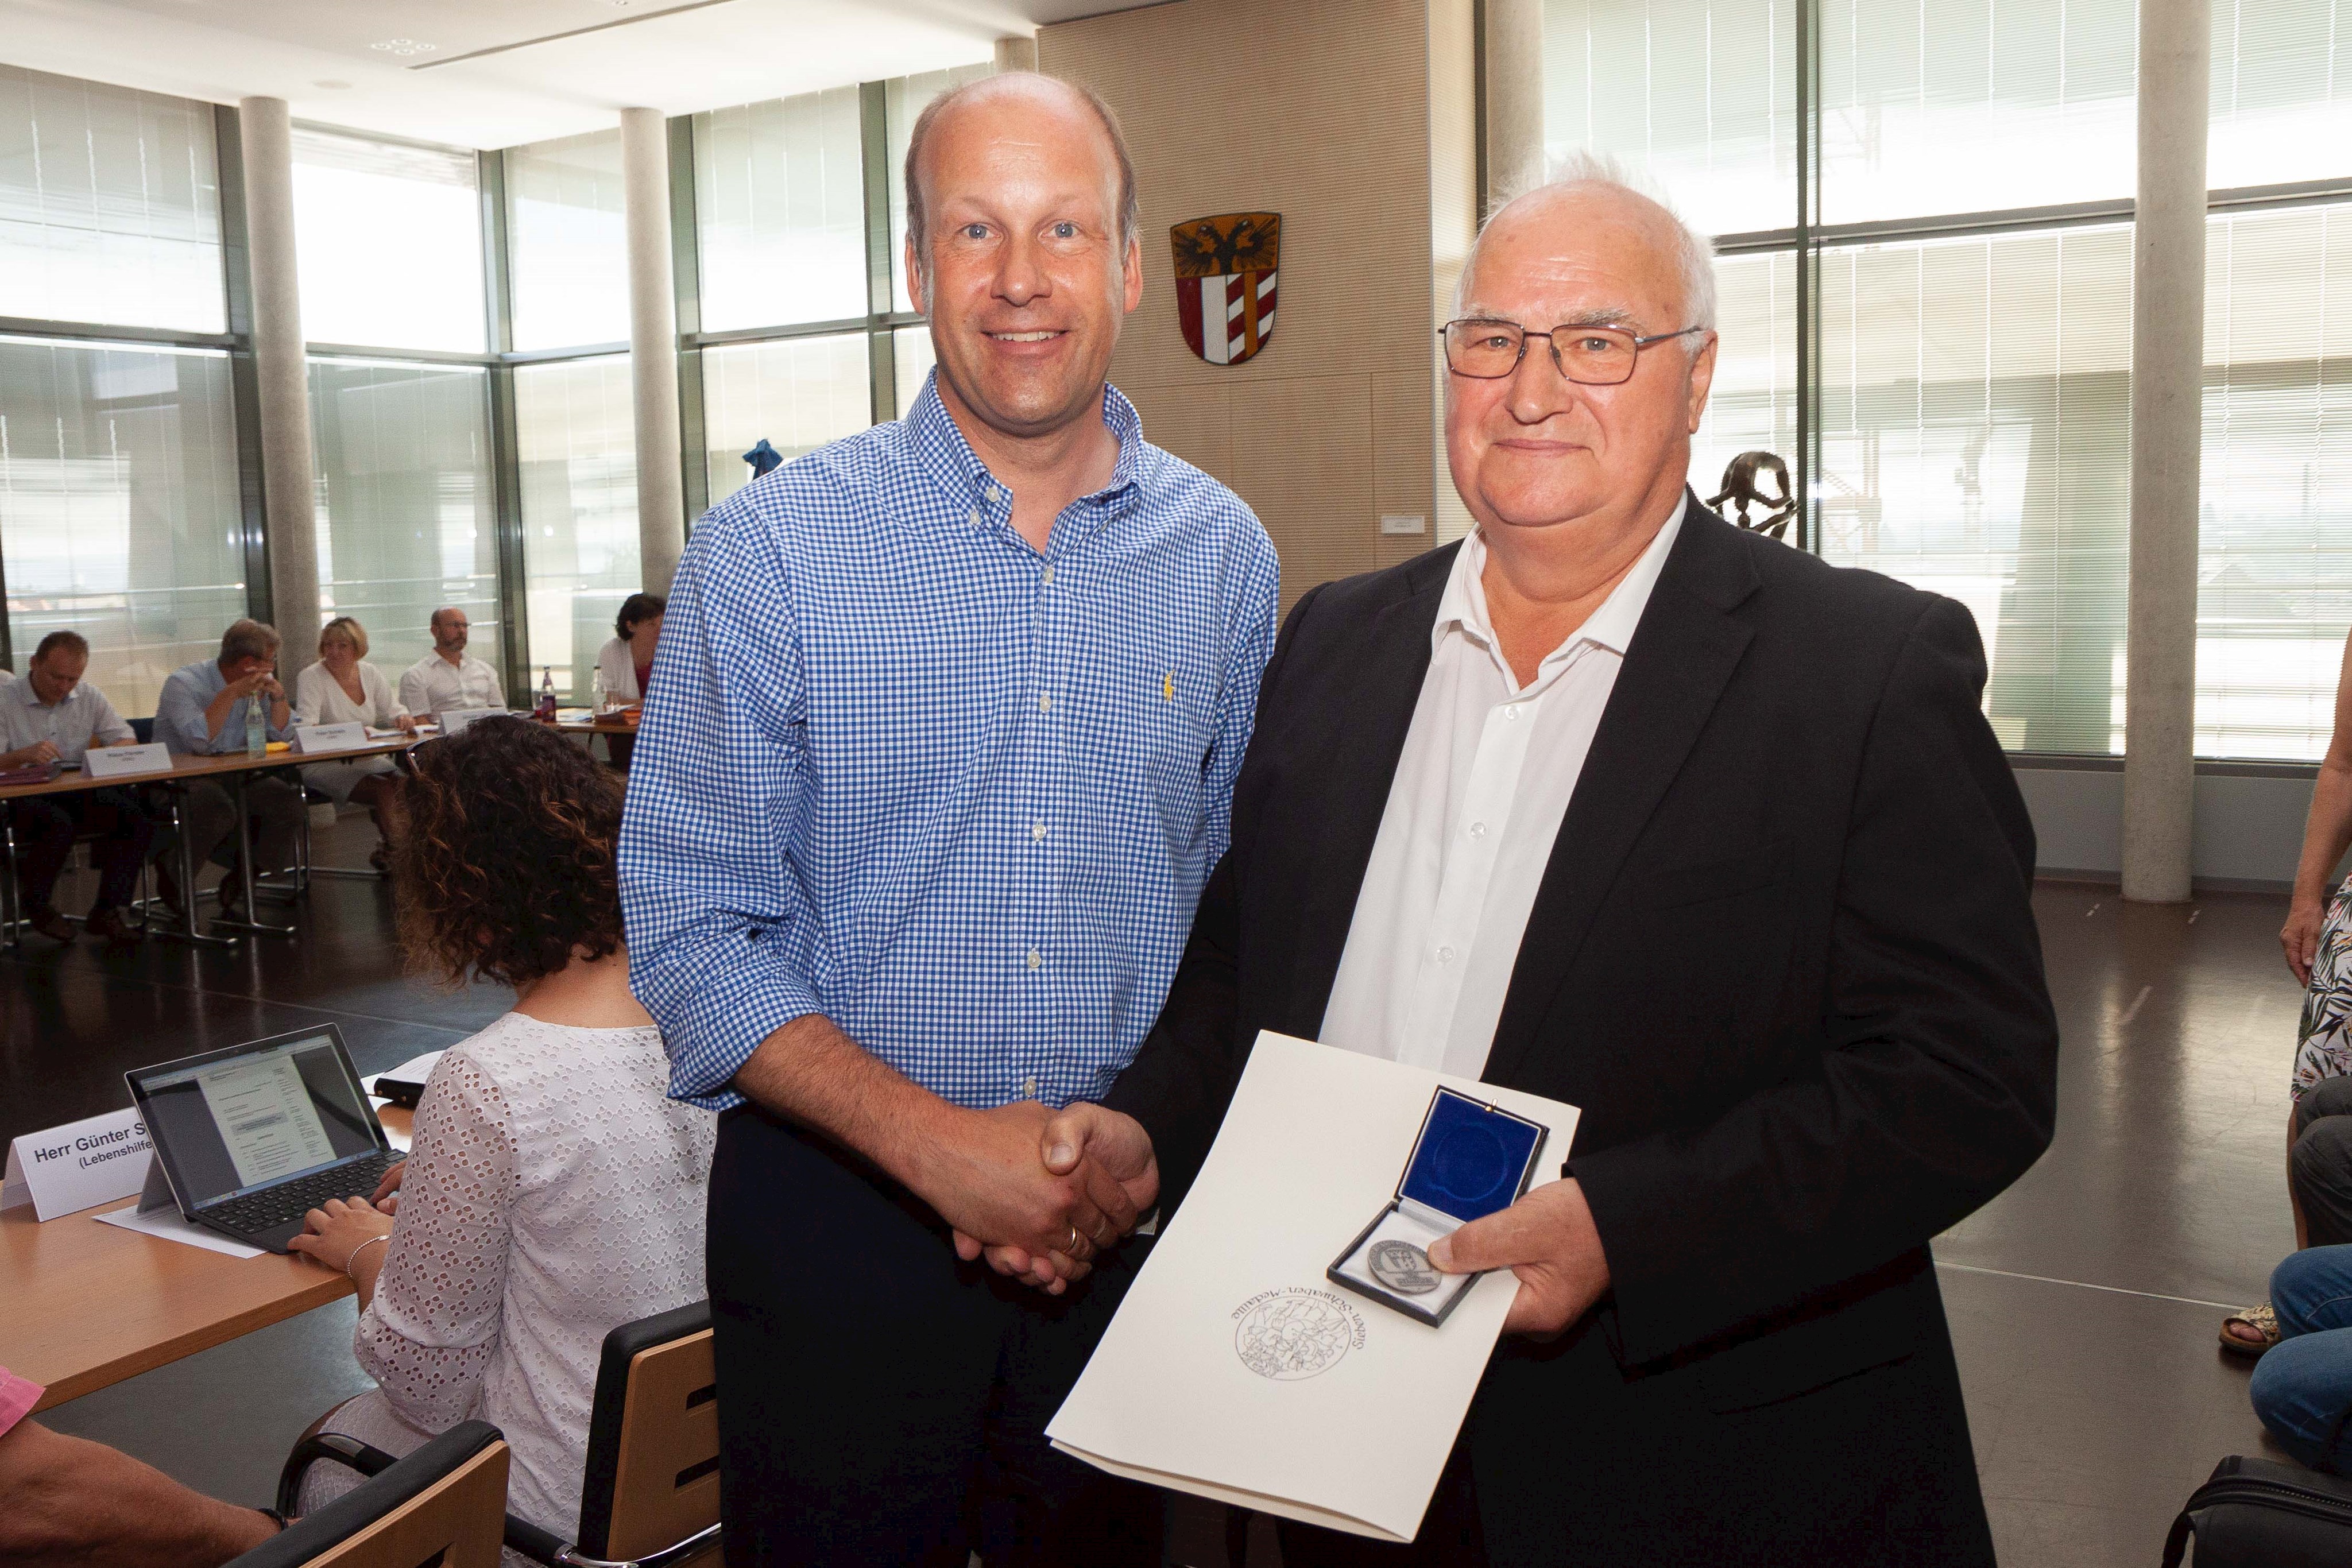 Sieben-Schwaben-Medaille an Werner Alig: Unermüdlicher Einsatz für Menschen mit Behinderung